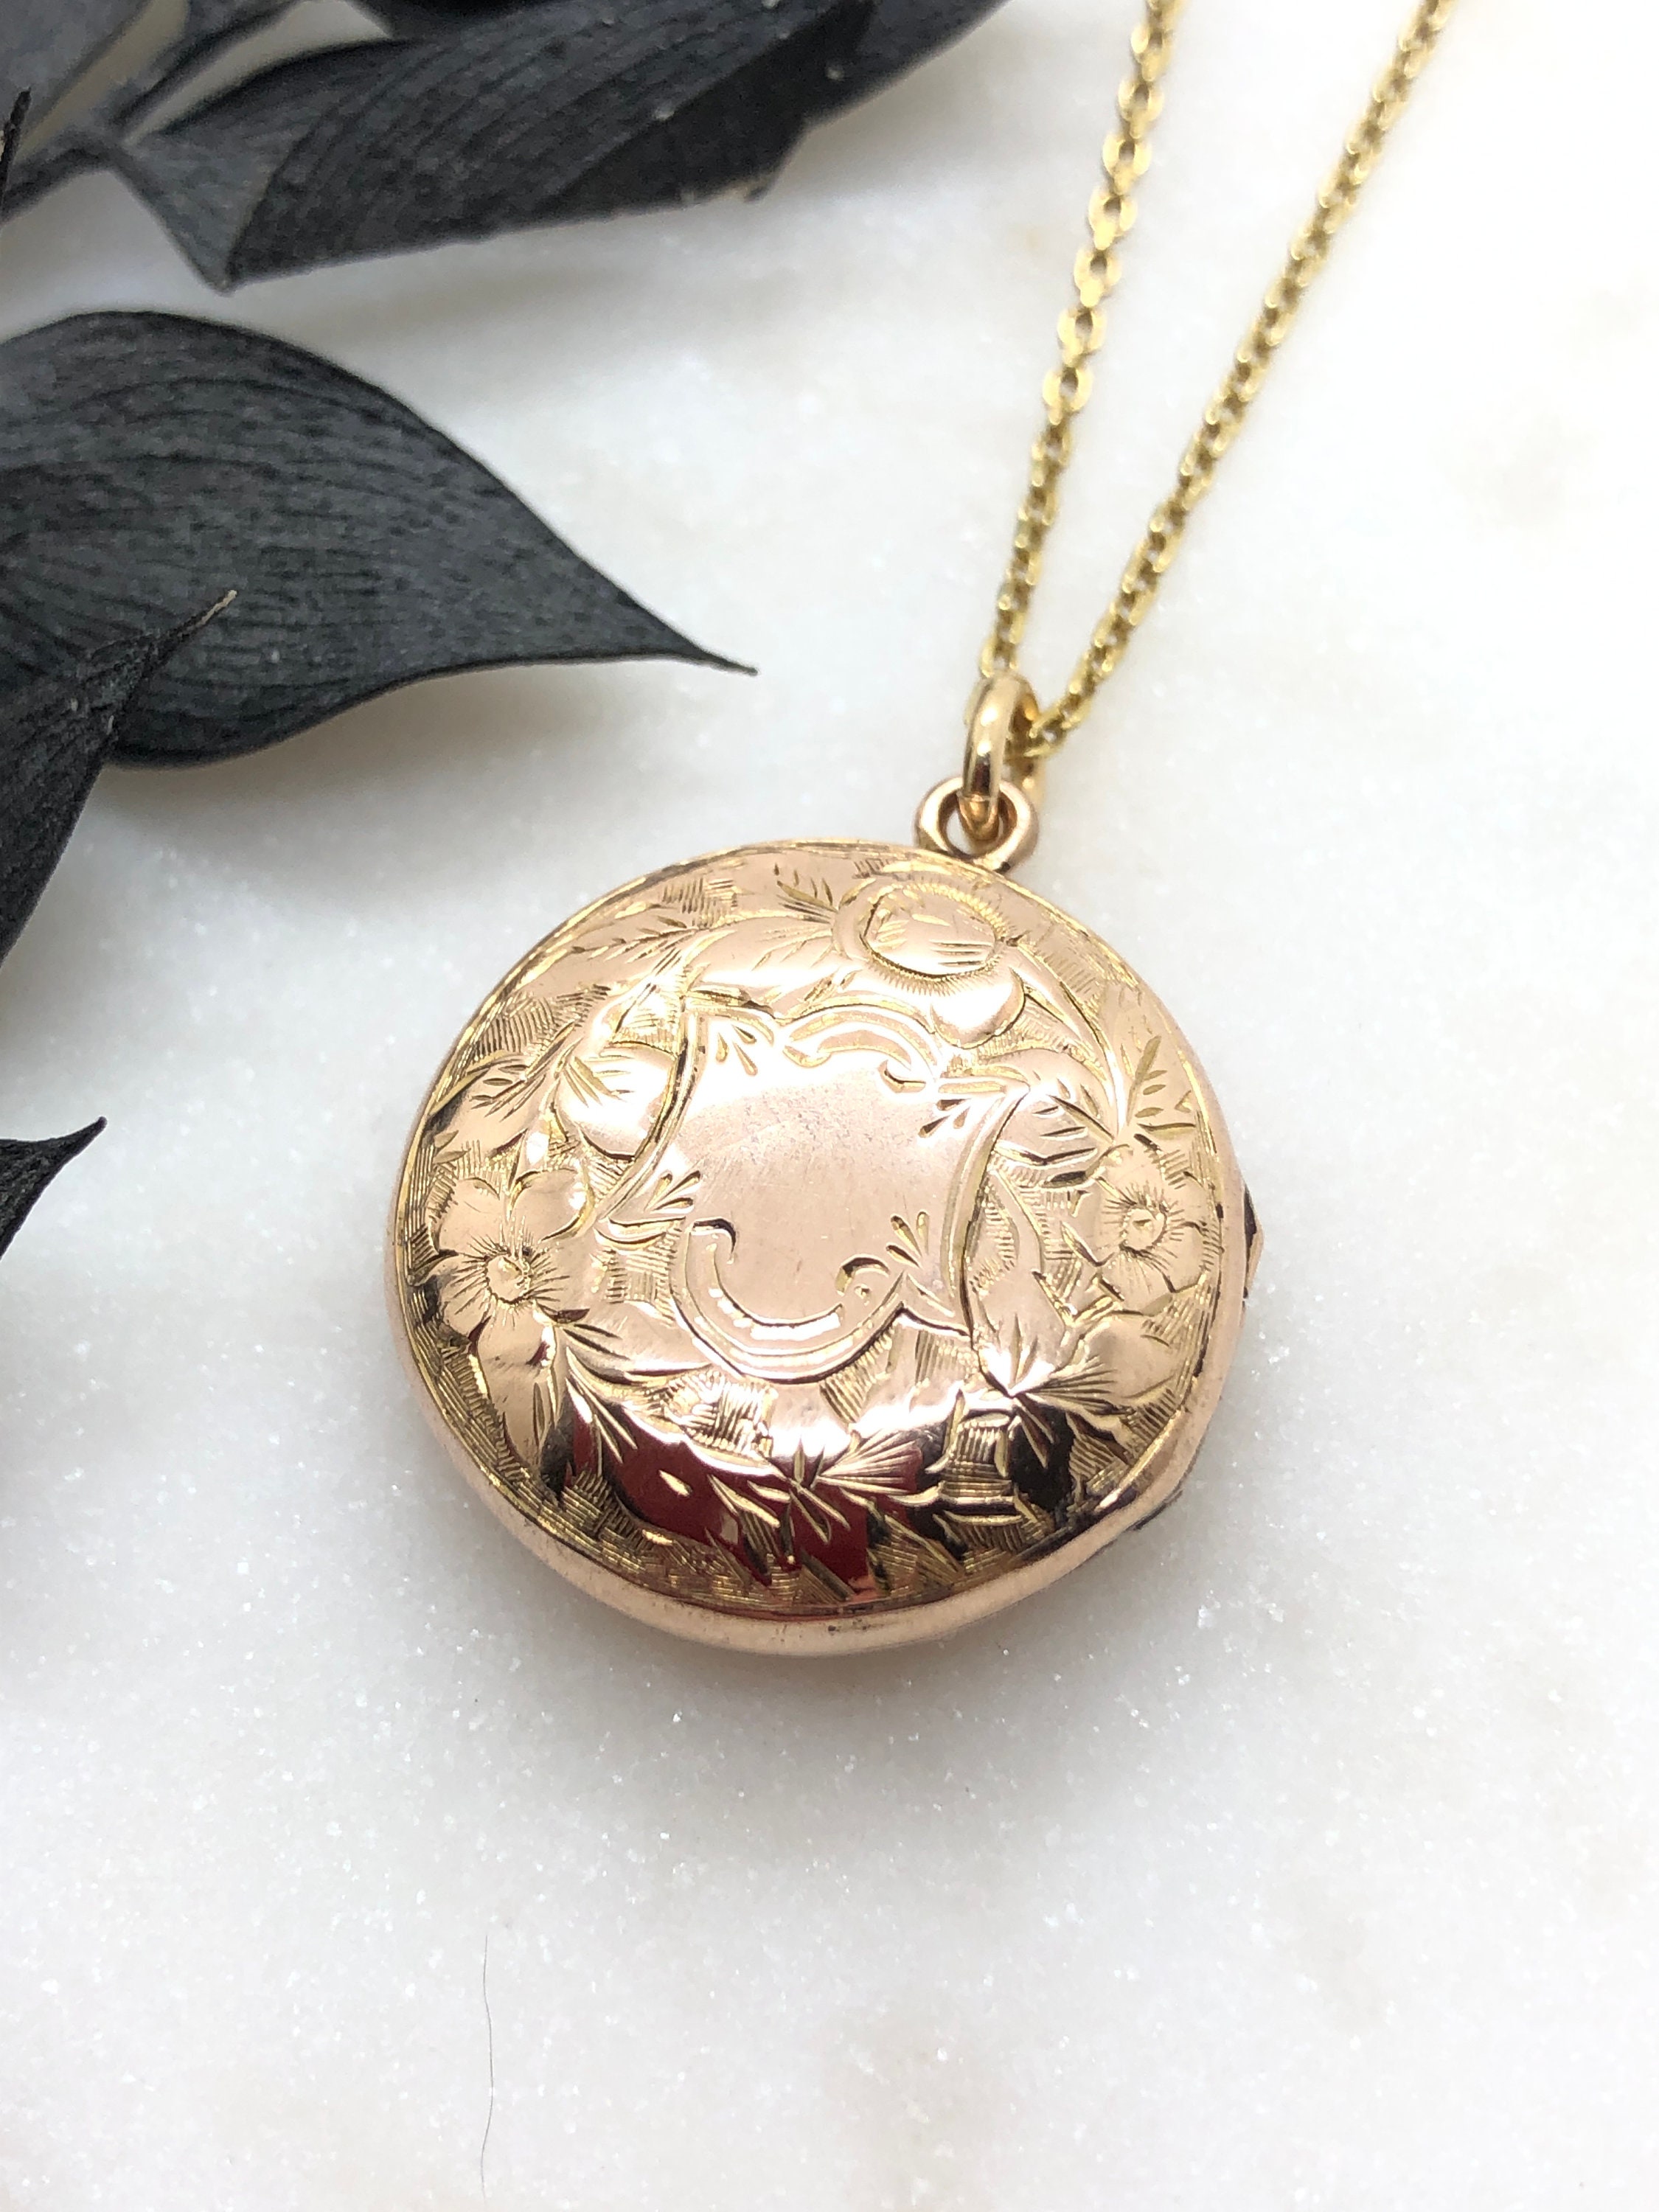 Antique Gold Locket Necklace Cherry Flower Design With Brass 